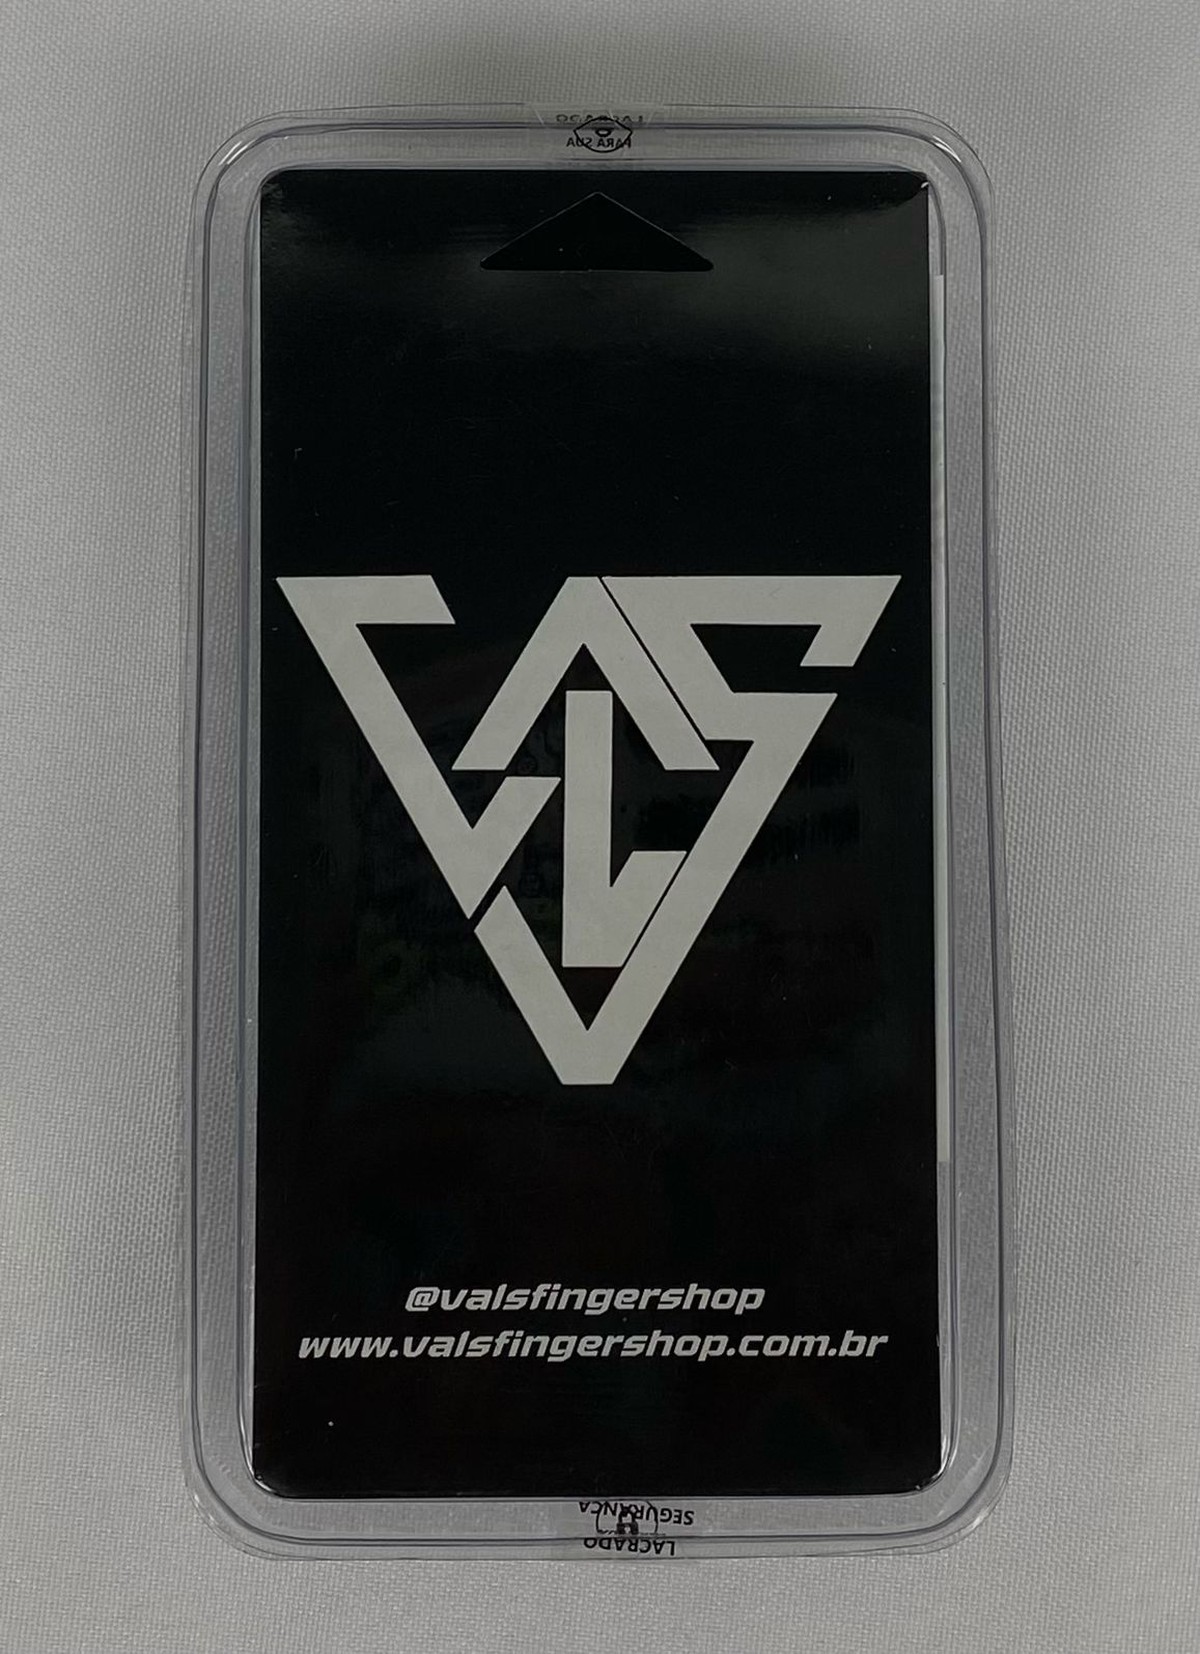 Fingerboard Vals Visionary - Logo Colorido Black - VALS Fingershop